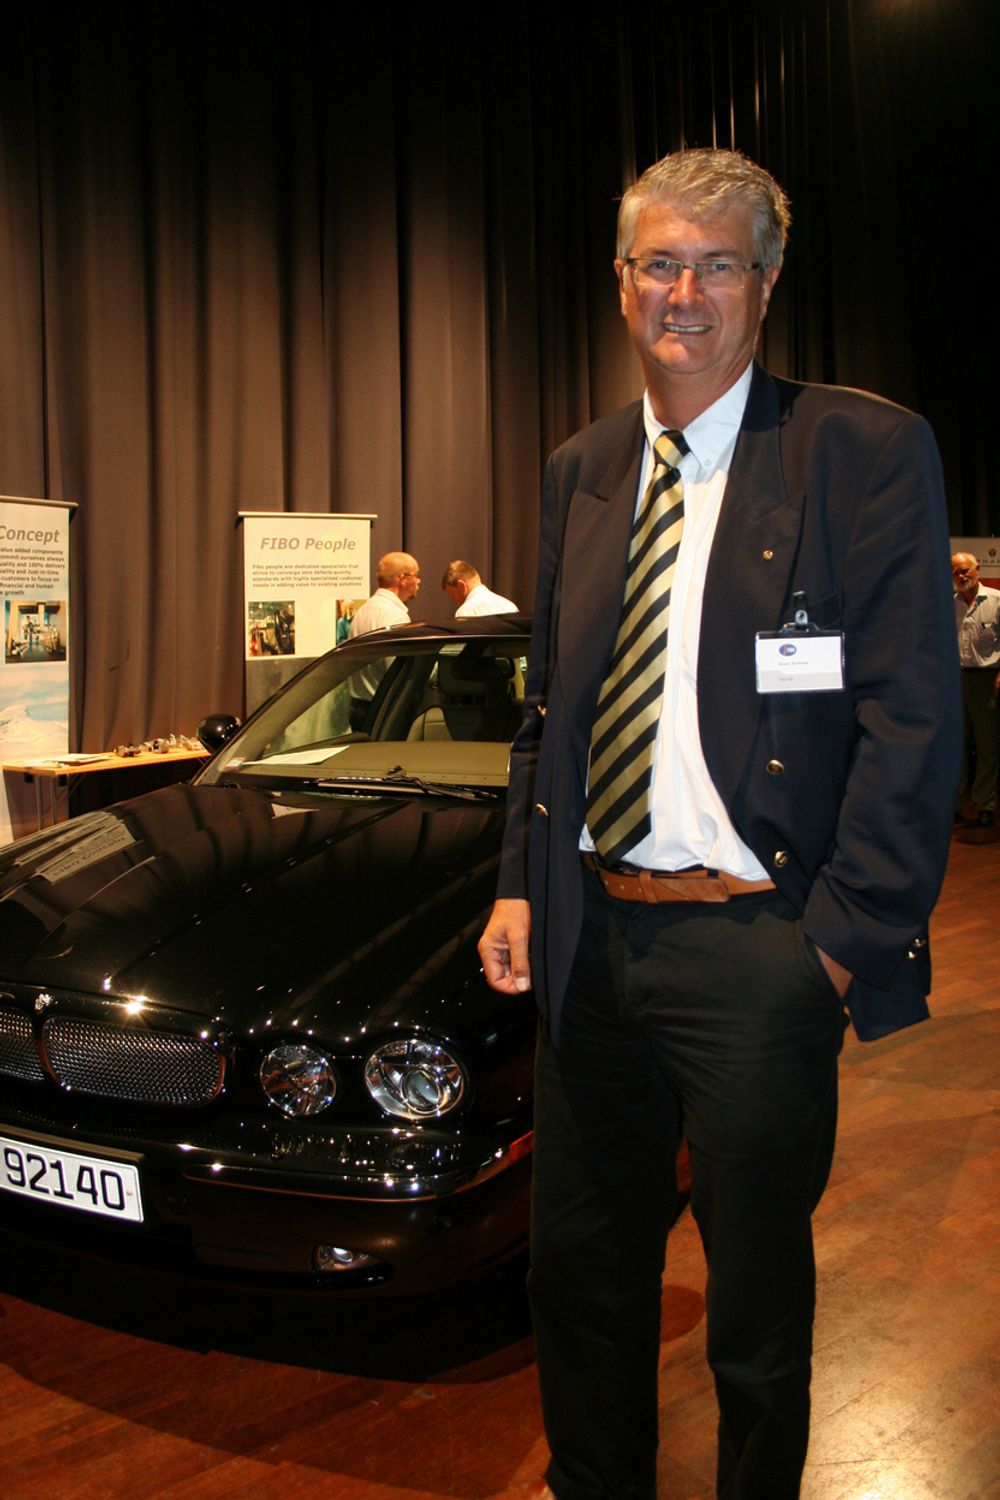 STOLT: Fibo produserer også deler til Jaguar, og tidligere administrerende direktør Einar Sorknes viser stolt frem et eksemplar.